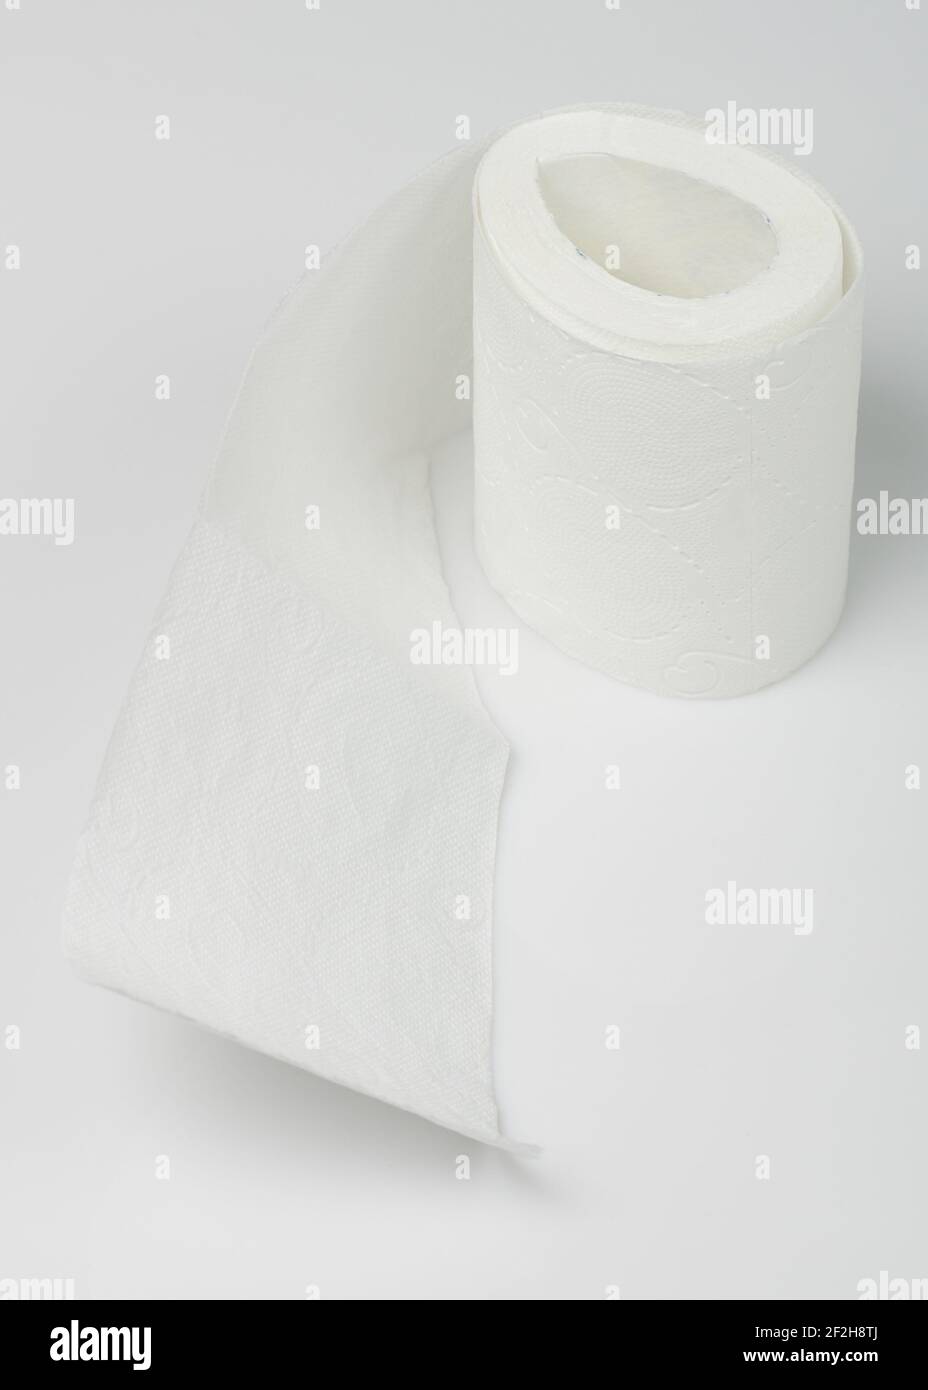 Edge of toilet paper on white studio background Stock Photo